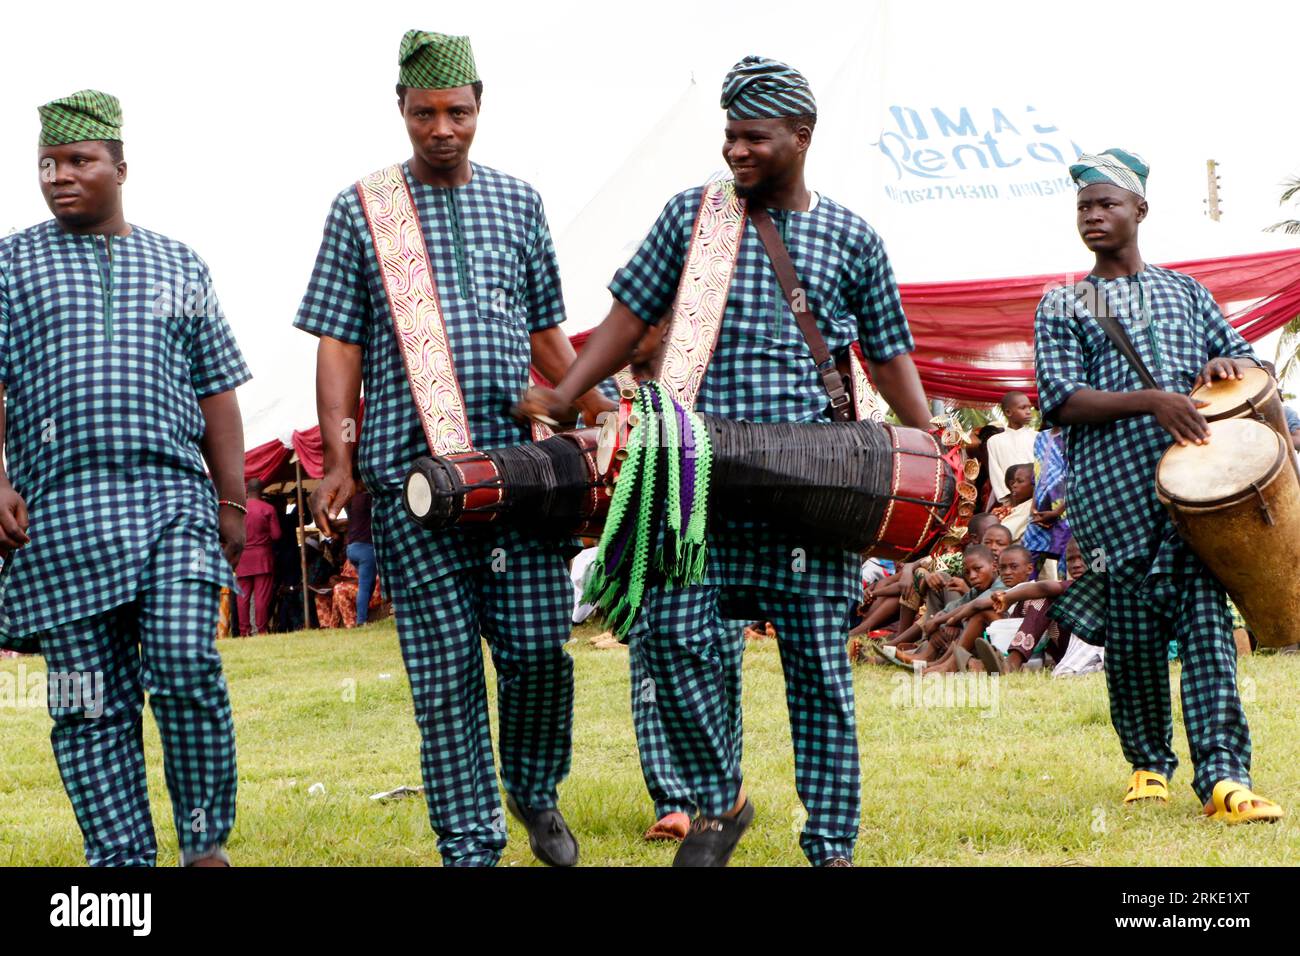 Tambours traditionnels au World Sango Festival qui est un festival annuel organisé parmi les Yoruba en l'honneur de Sango, une divinité du tonnerre et du feu qui était un guerrier et le troisième roi de l'Empire Oyo après avoir succédé à Ajaka son frère aîné. Le festival accueille des visiteurs de tout le pays et des adeptes de pays étrangers. Etat d'Oyo, Lagos, Nigeria. Banque D'Images